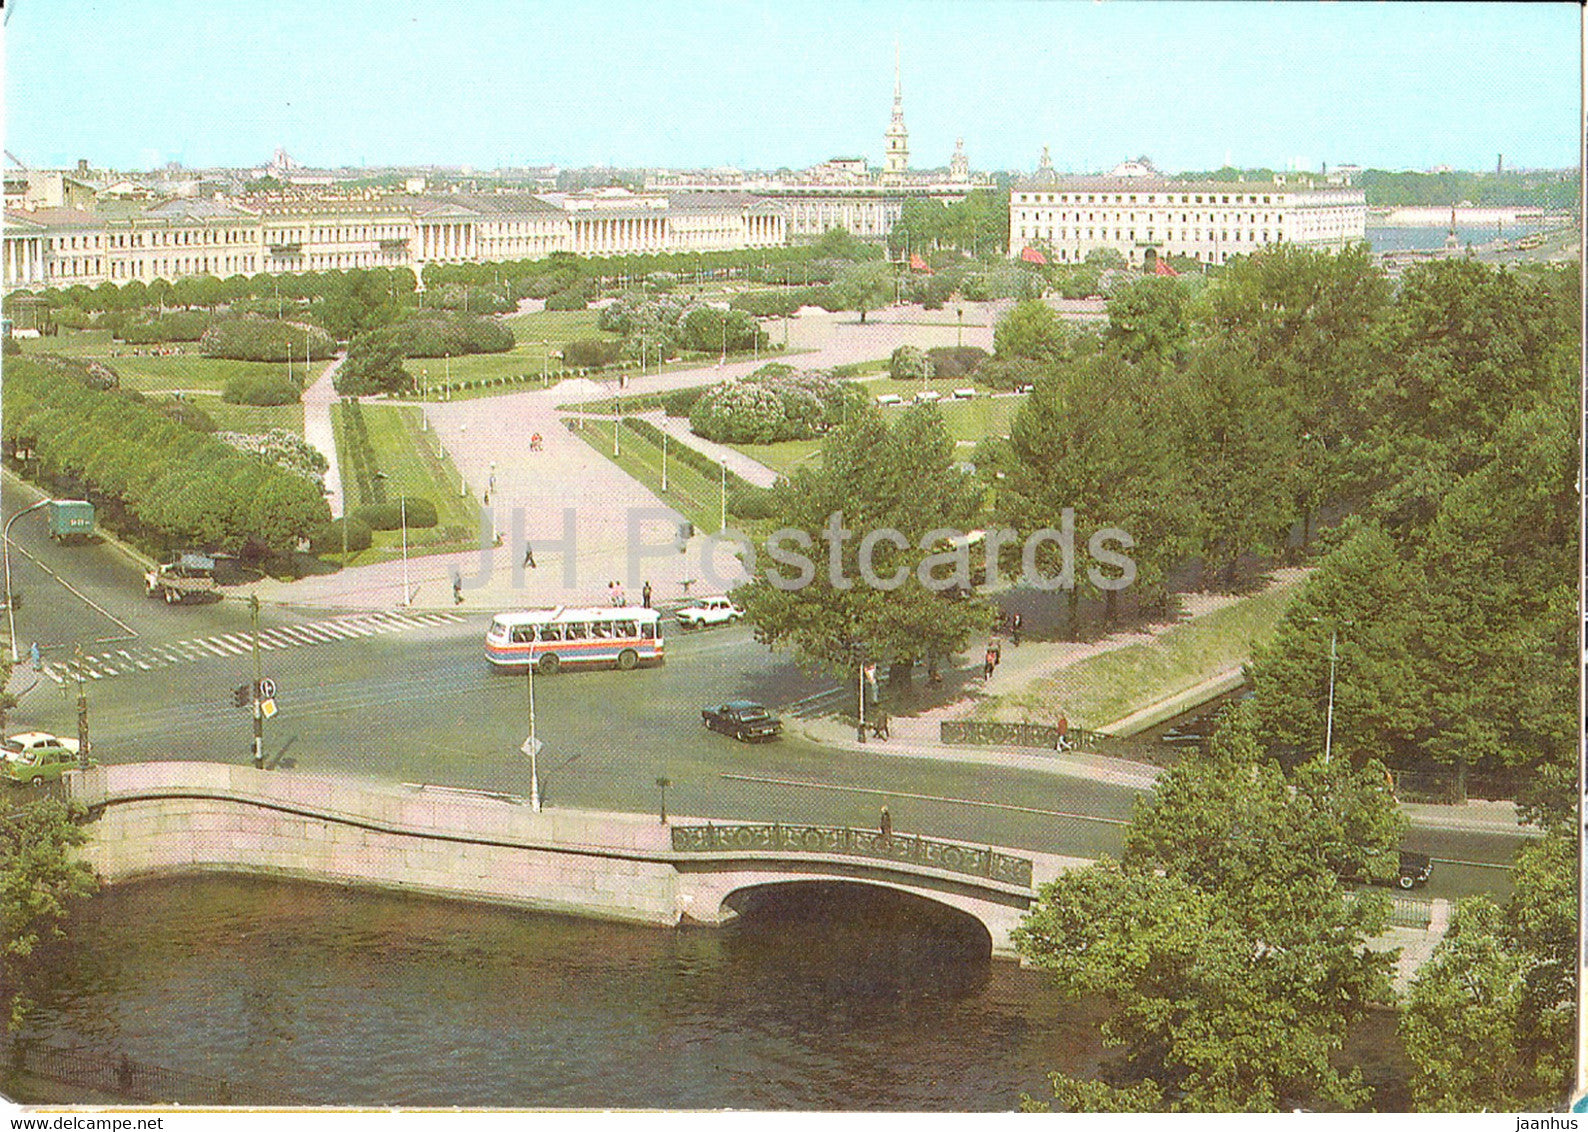 Leningrad - St Petersburg - Field of Mars - bus - postal stationery - 1985 - Russia USSR - unused - JH Postcards